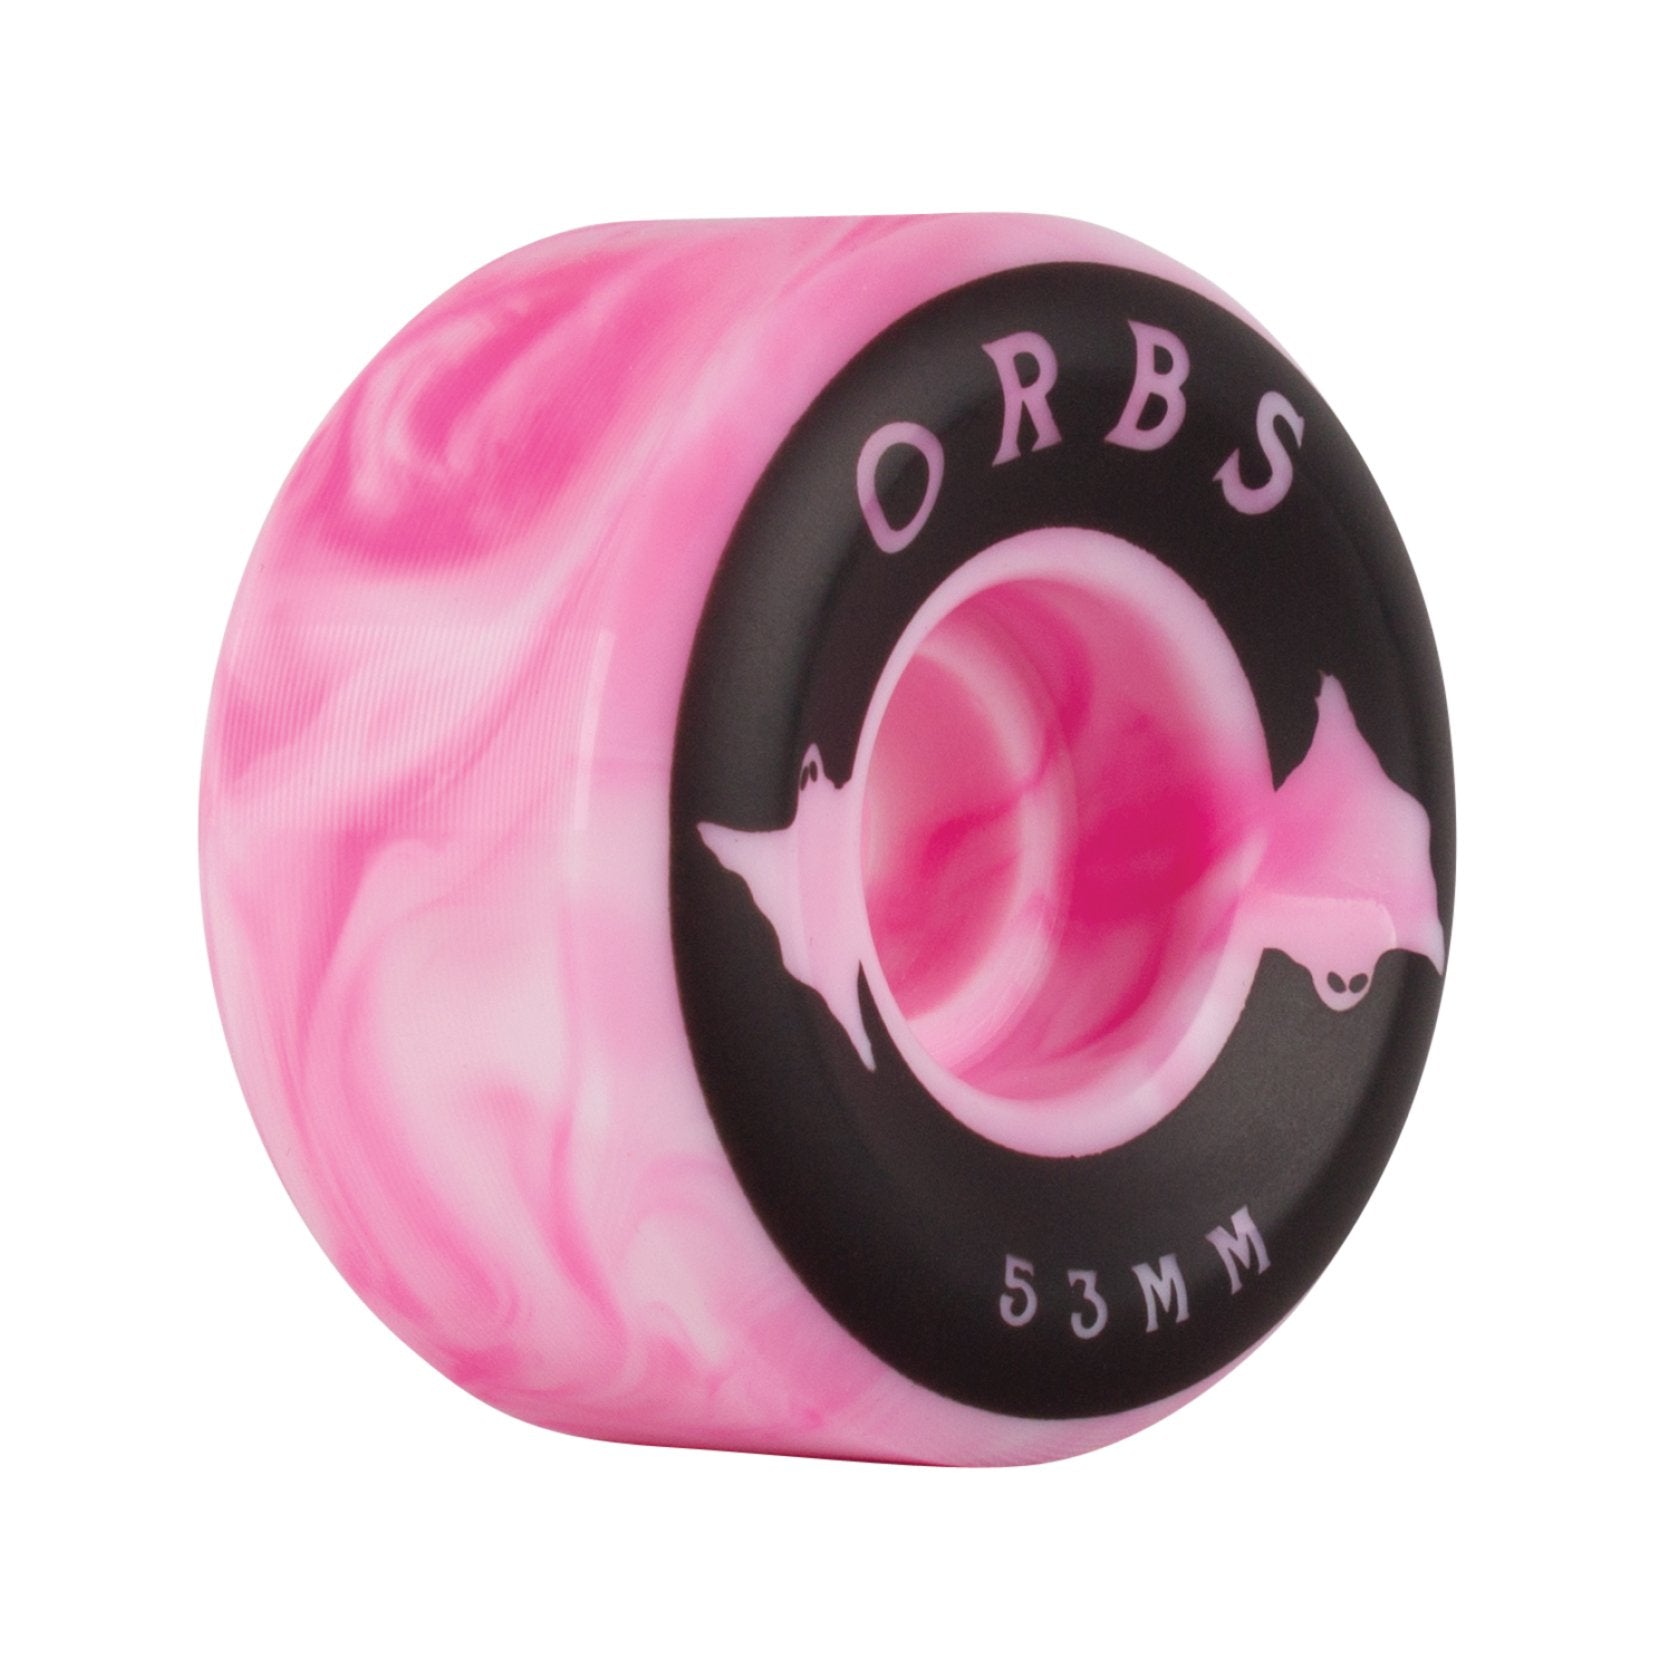 Orbs Specters Swirls 99a Pink/White 53mm Skateboard Wheels